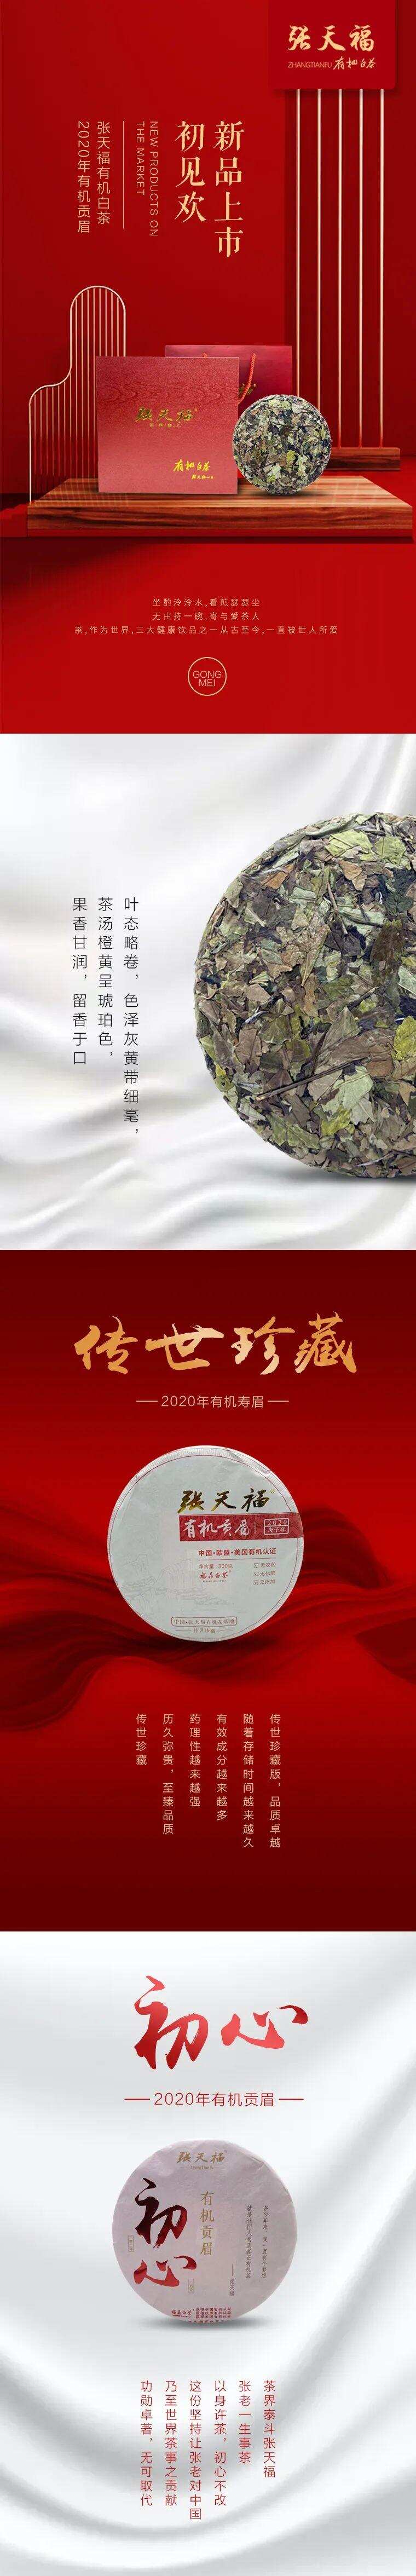 2020张天福有机白茶 新品上市初见欢「有机贡眉」